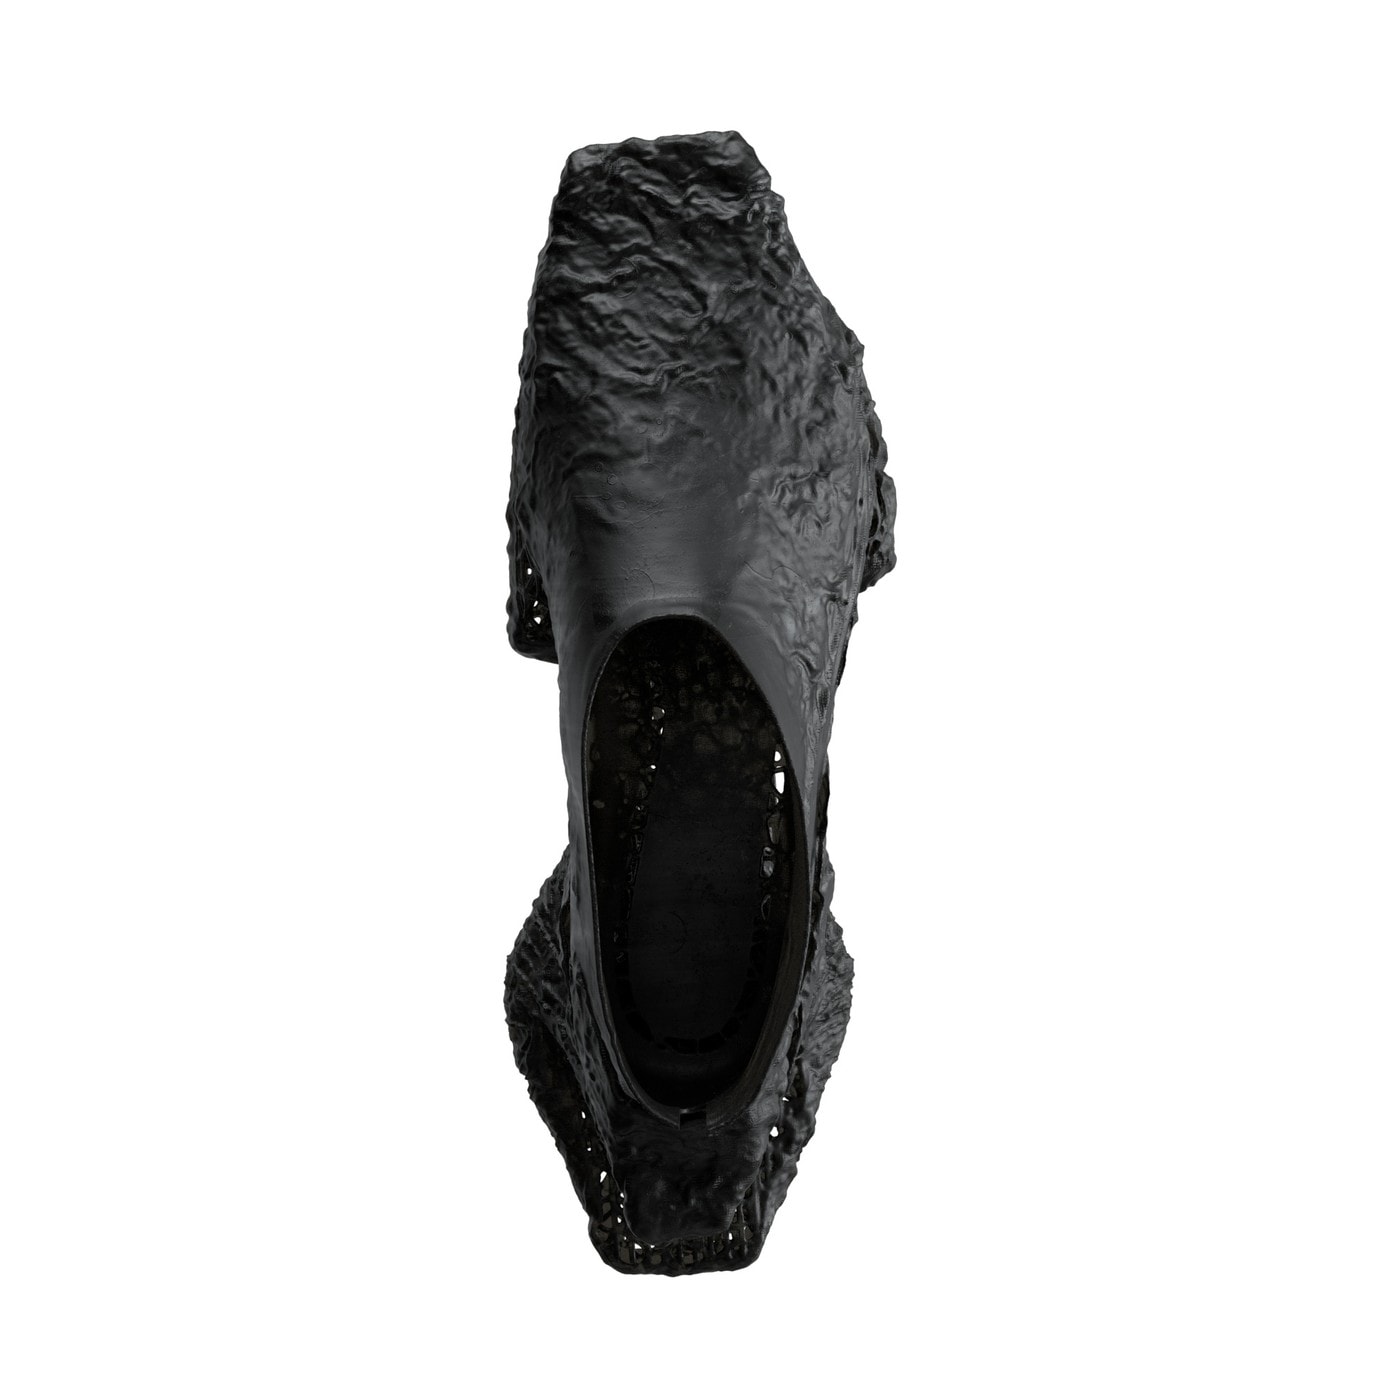 SCRY 正式發布全新 Stela Basic & Erosion 鞋款系列